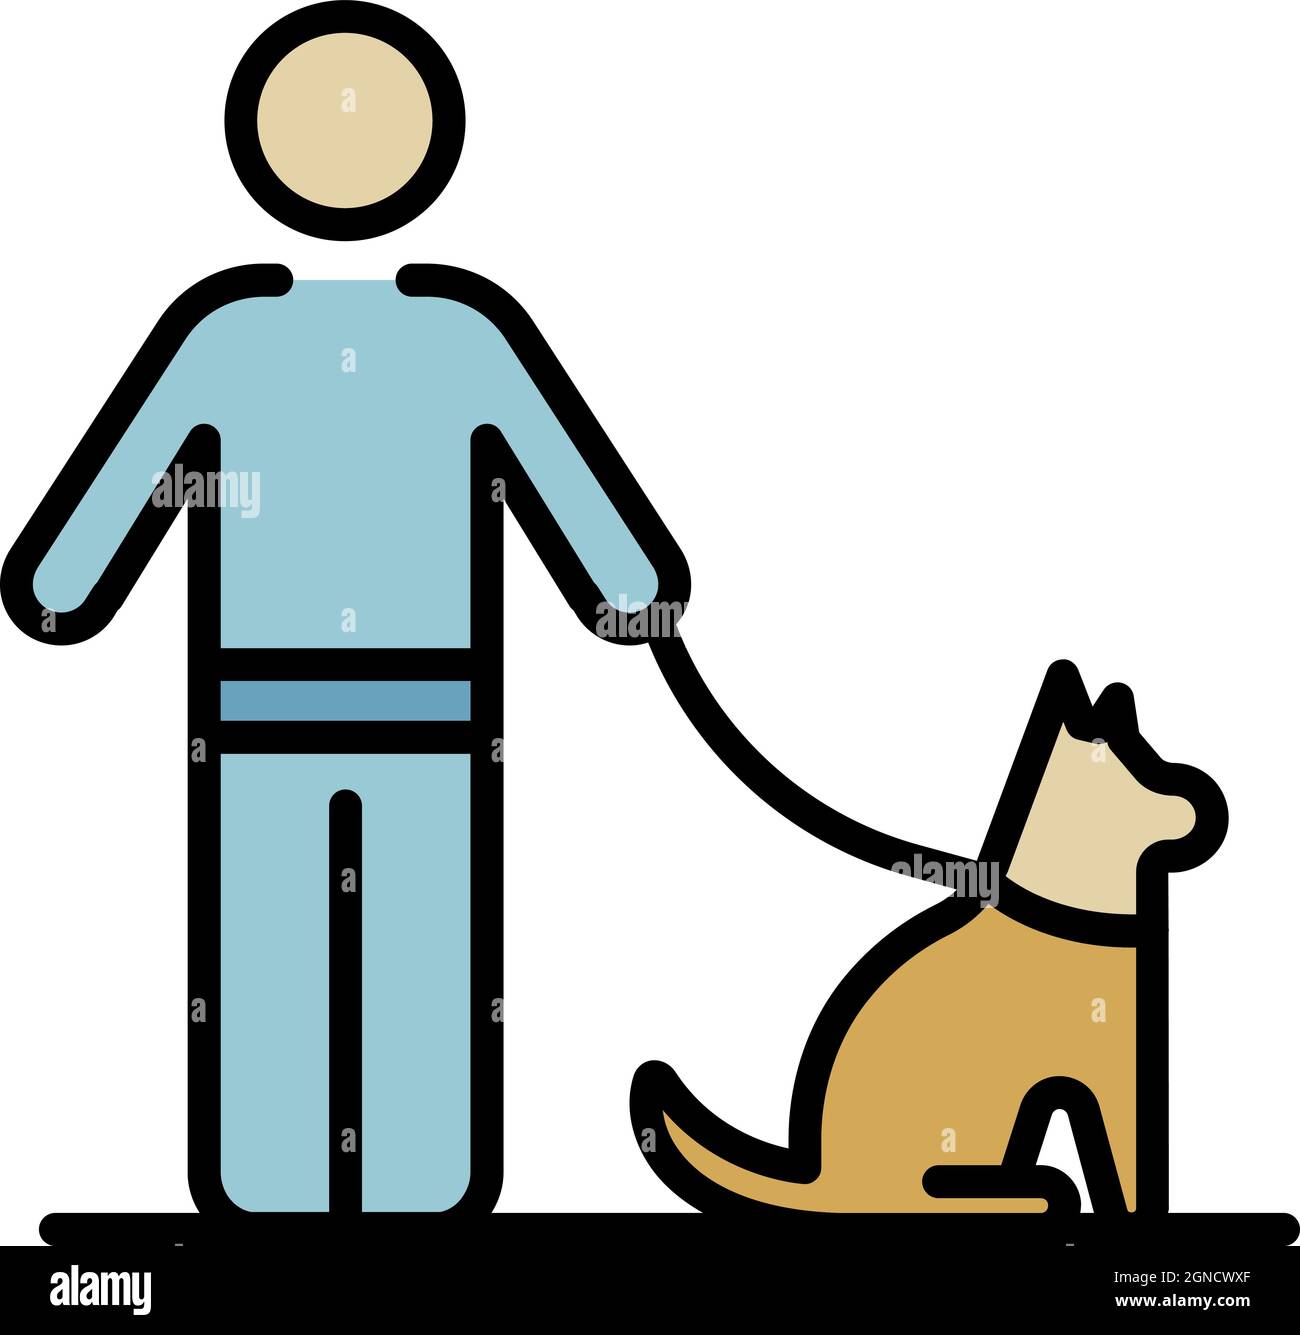 Mann, der Hund läuft. Umriss Mann zu Fuß Hund Vektor-Symbol Farbe flach  isoliert Stock-Vektorgrafik - Alamy